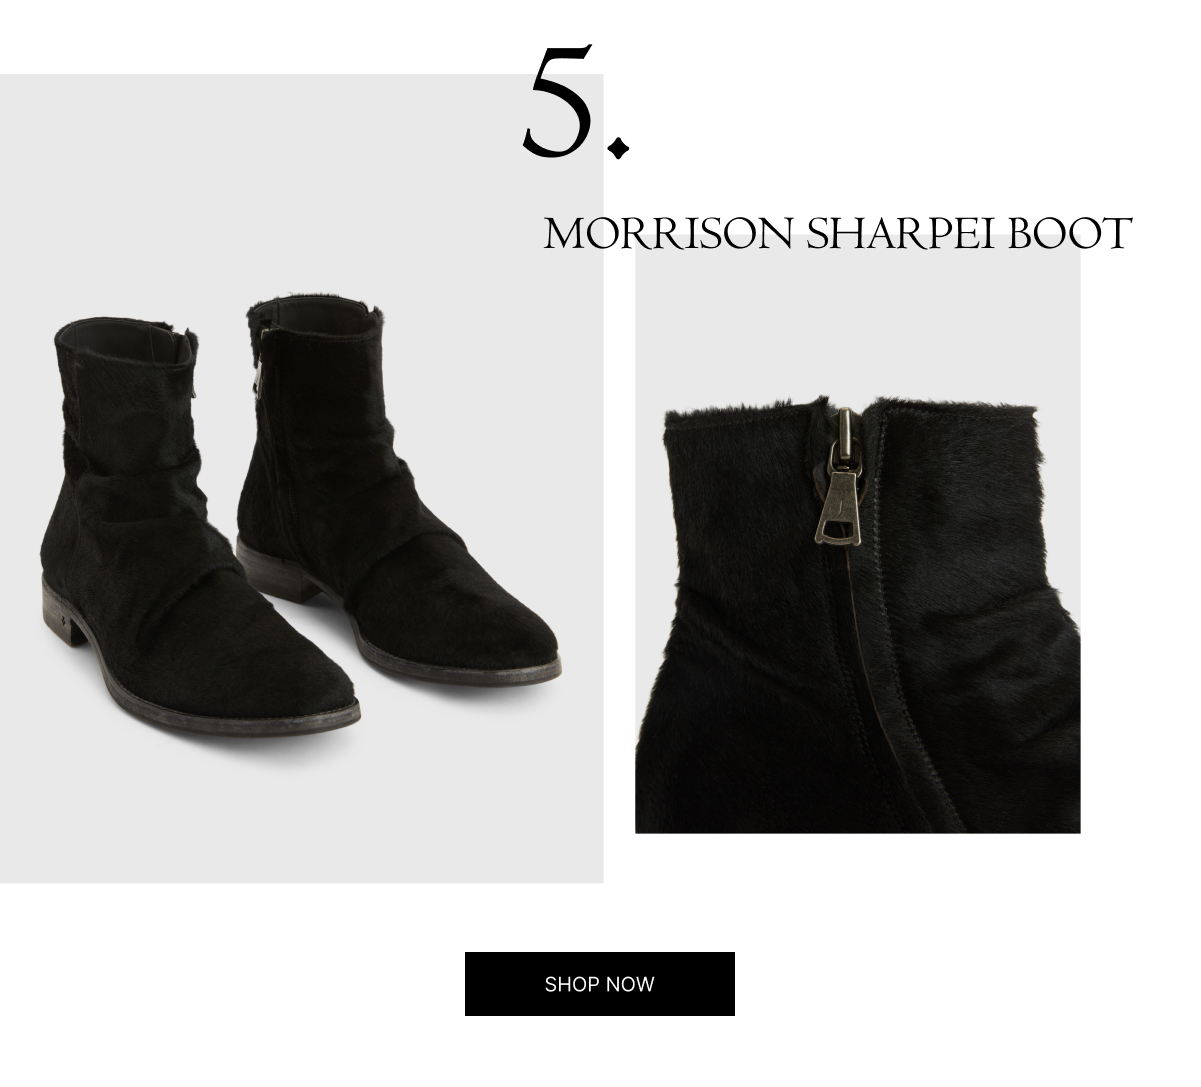 Morrison Sharpei Boot